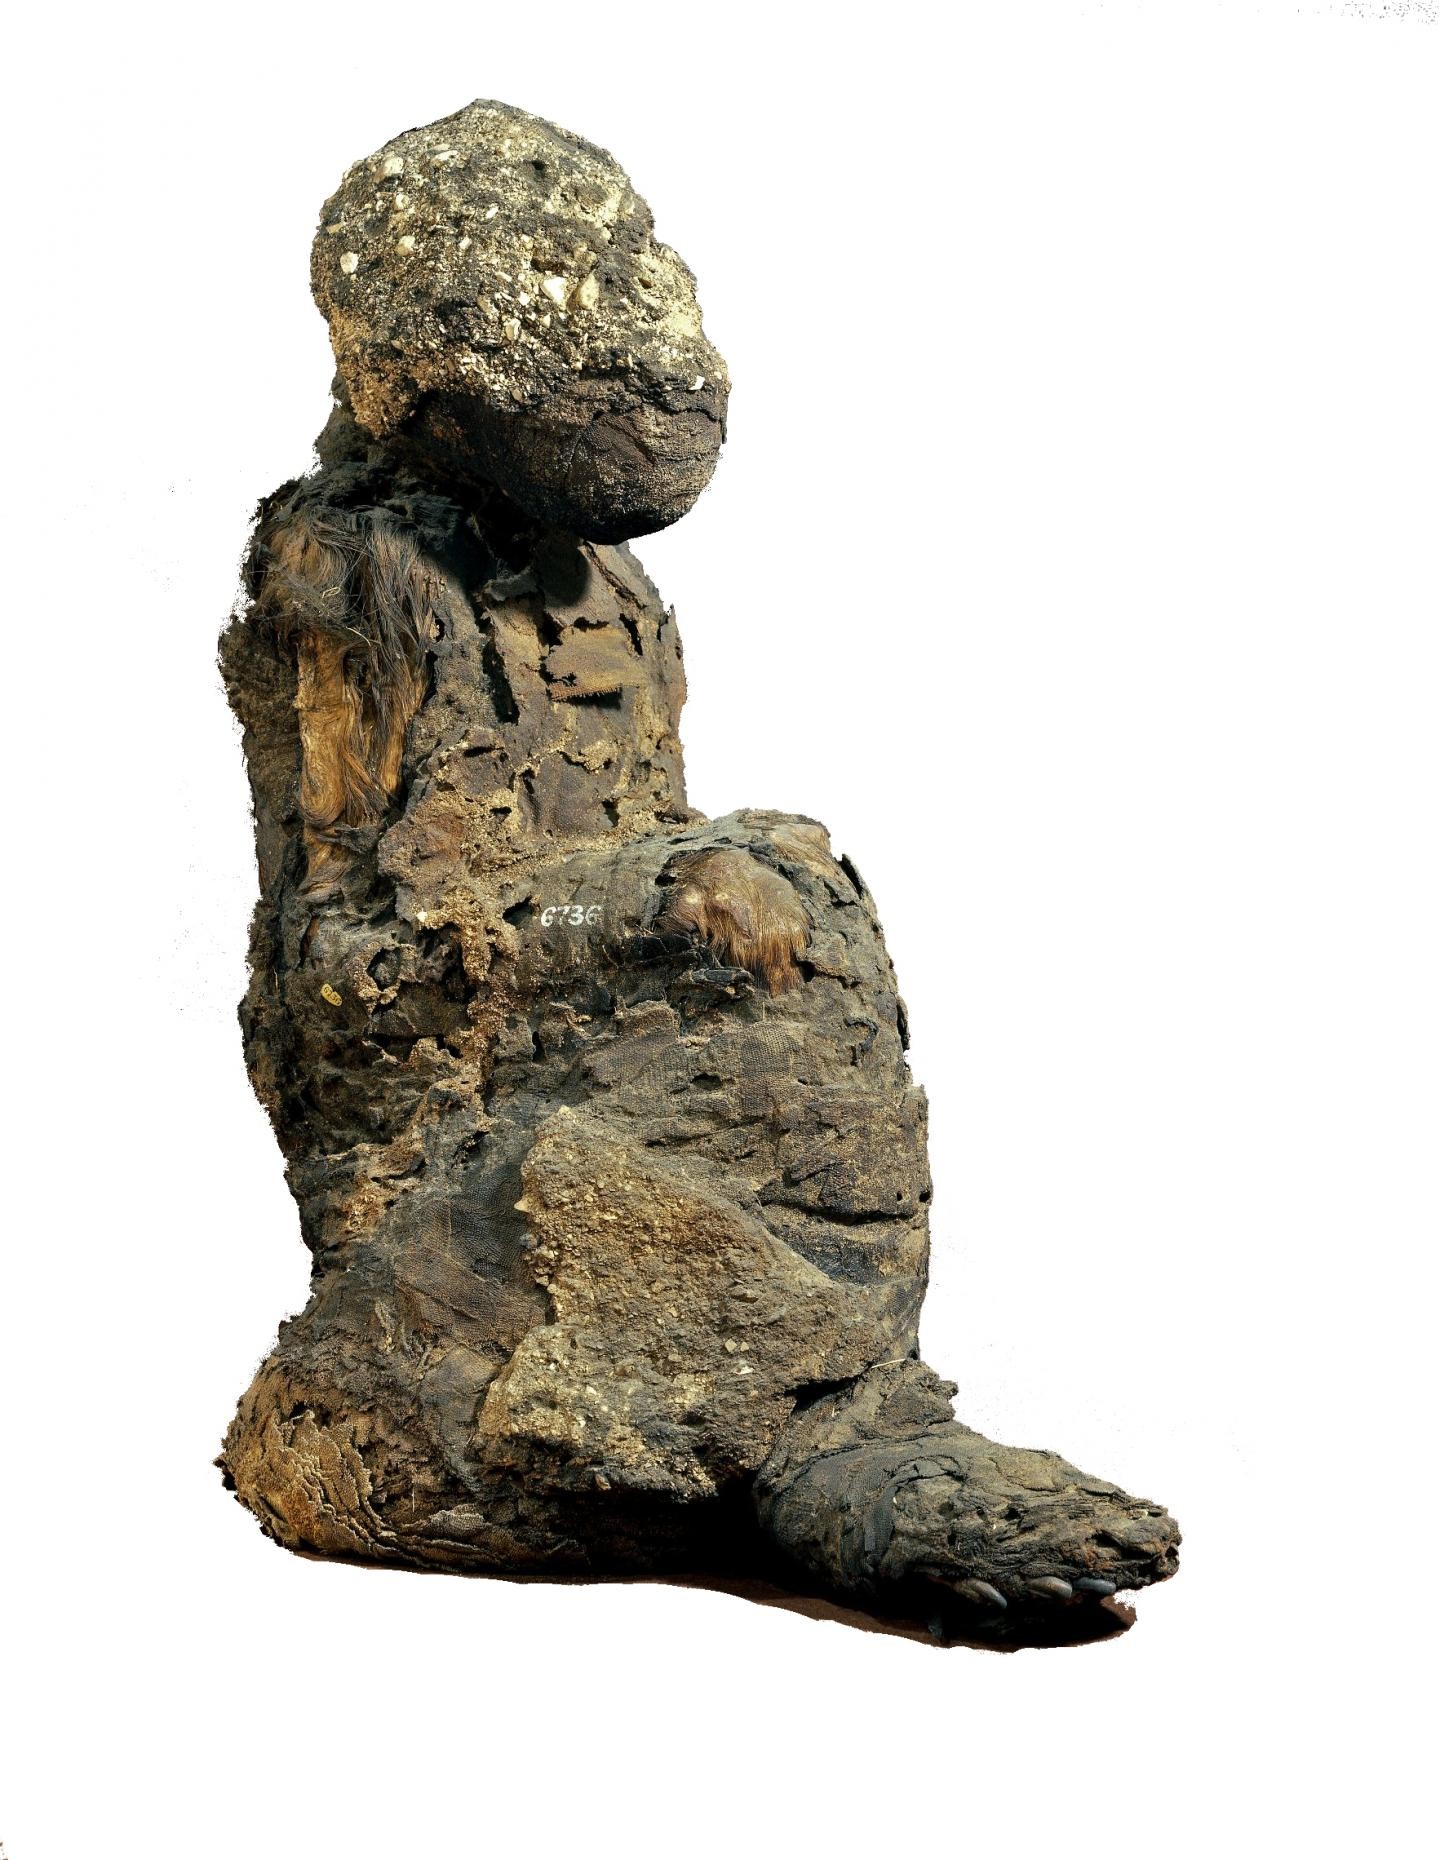 Espécime EA6736 recuperado do Templo do Novo Reino de Khons (Foto: Museu Britânico)